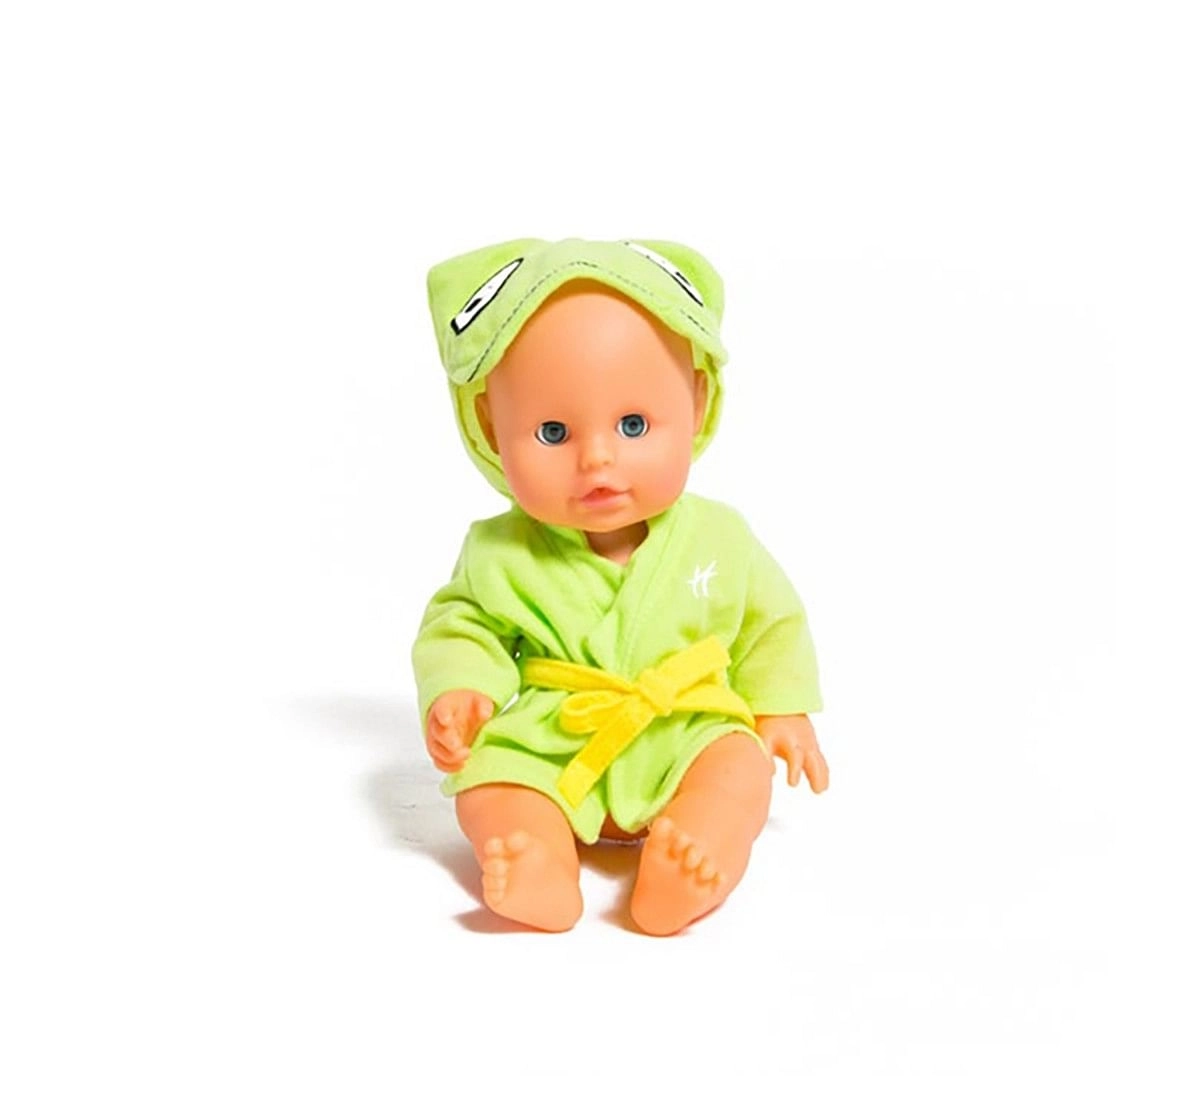 Hamleys Baby Ellie Bath Doll Dolls & Accessories for Kids age 2Y+ 